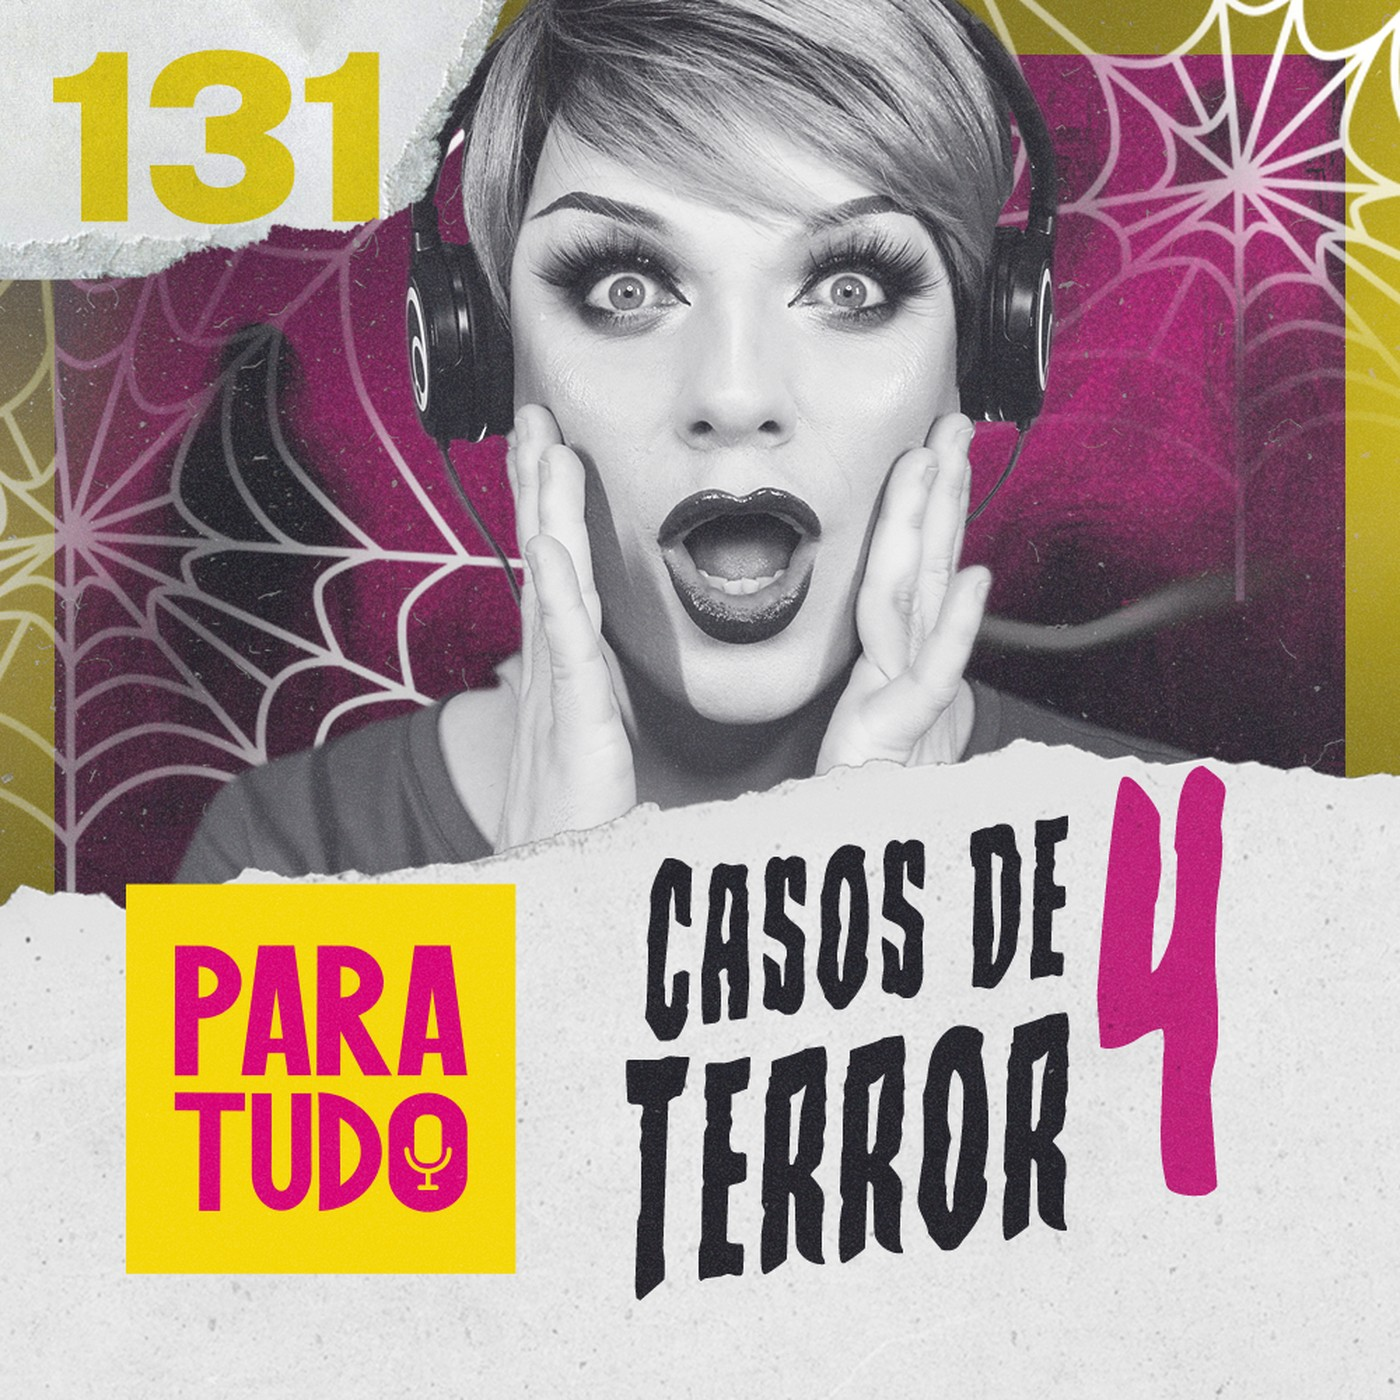 #131 - Casos de terror dos ouvintes para passar medo